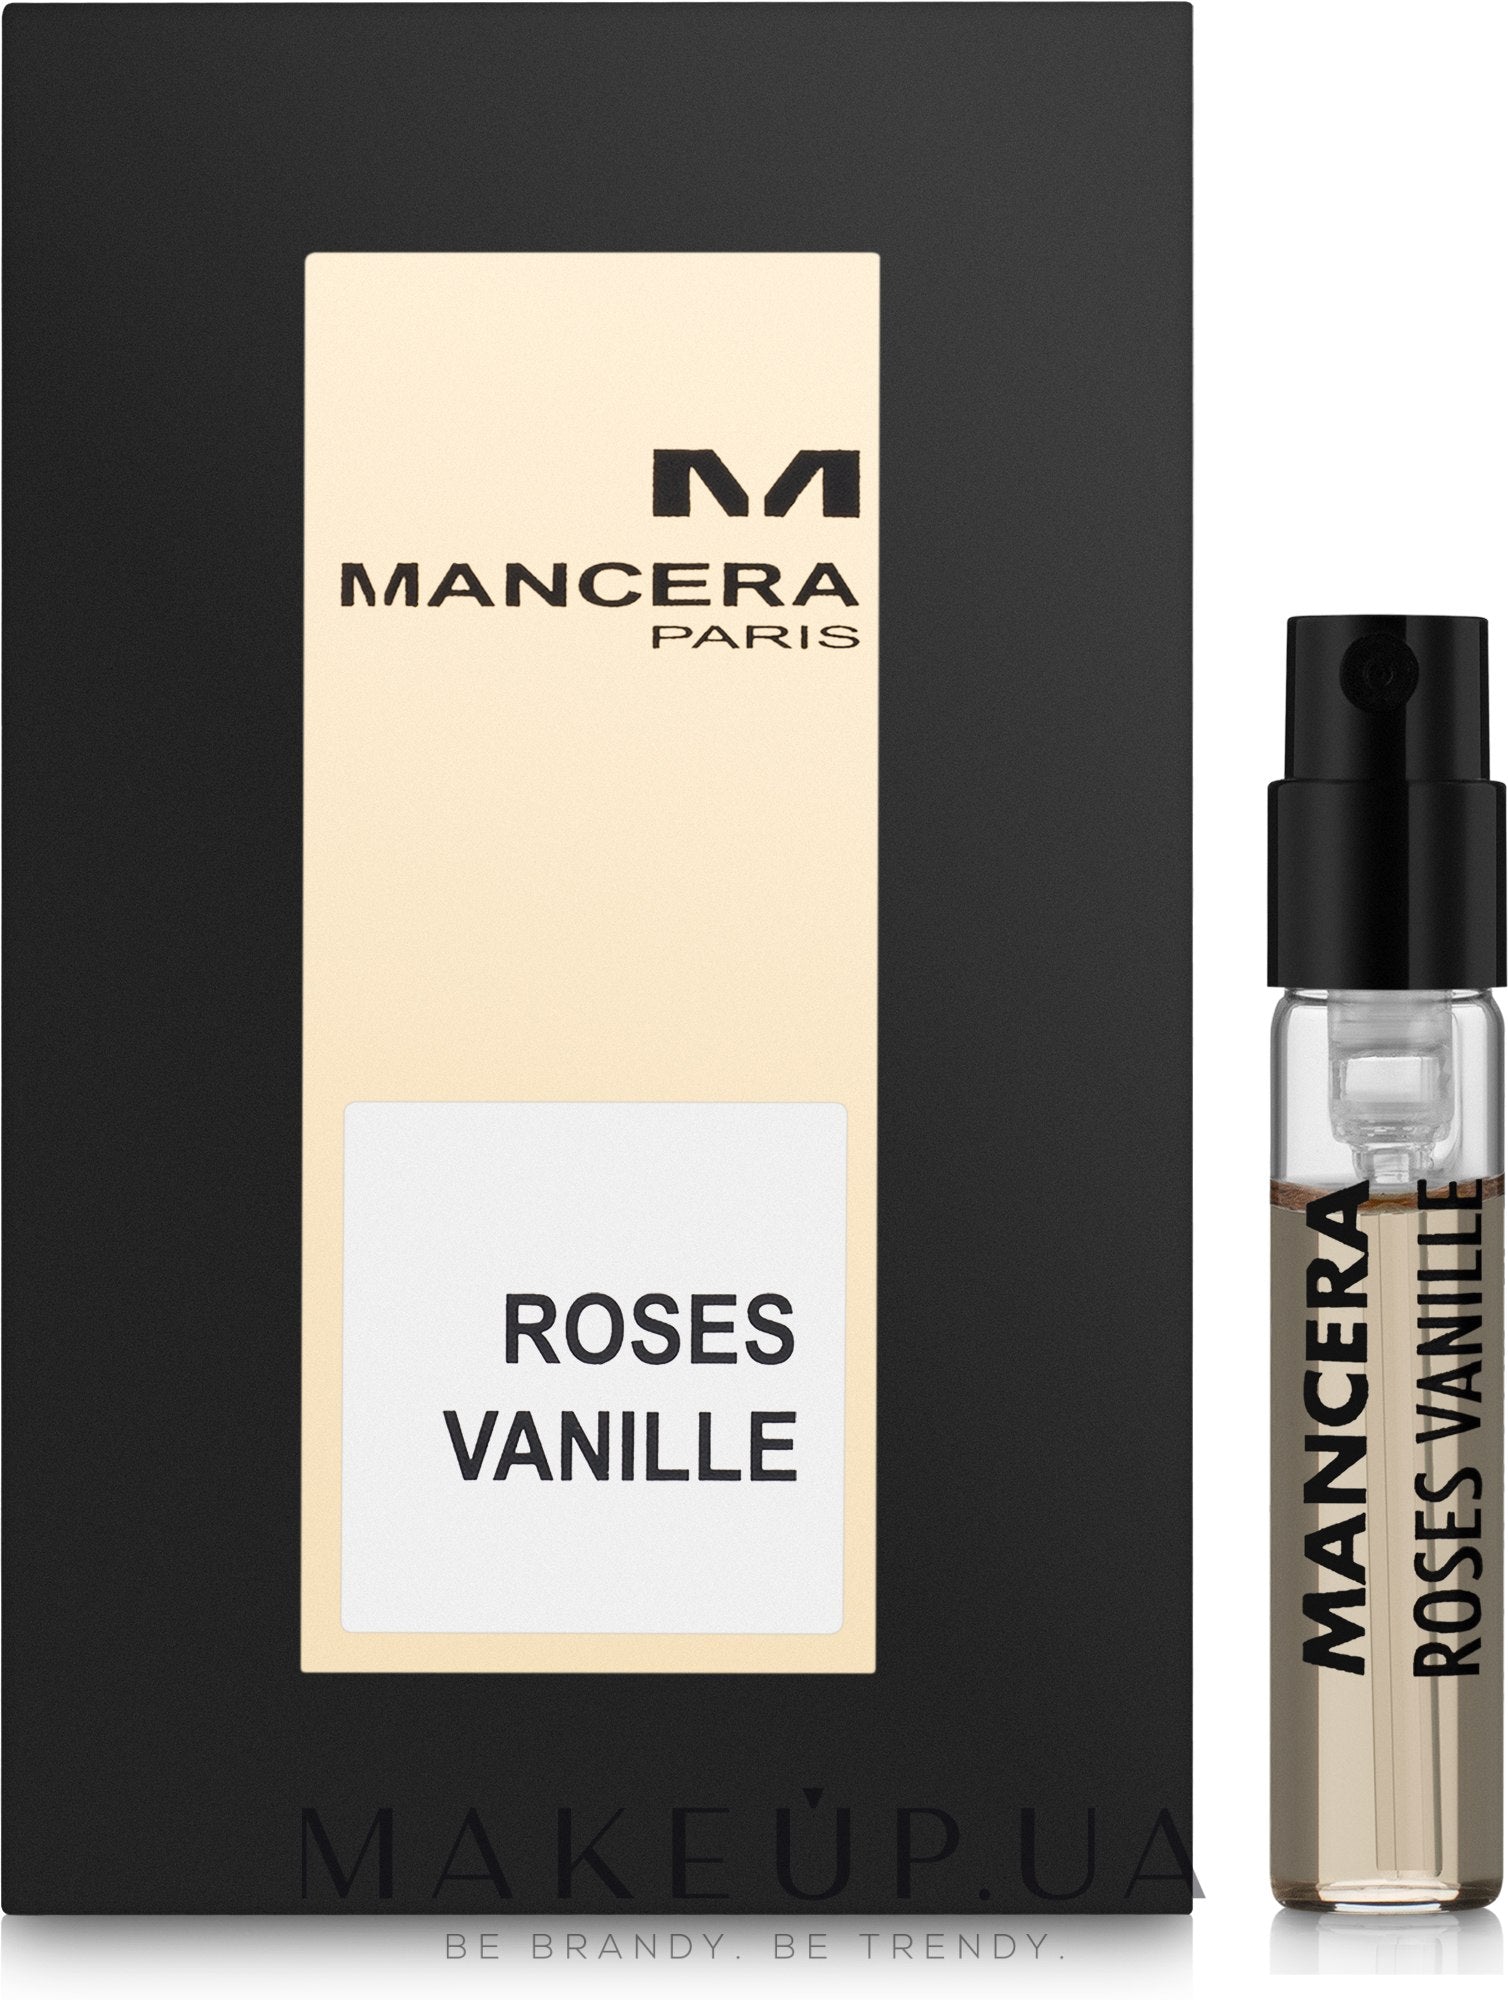 mancera Roses Vanille näytteet-Mancera Roses Vanille-Mancera-2ml virallinen näyte-creedhajusteiden näytteet